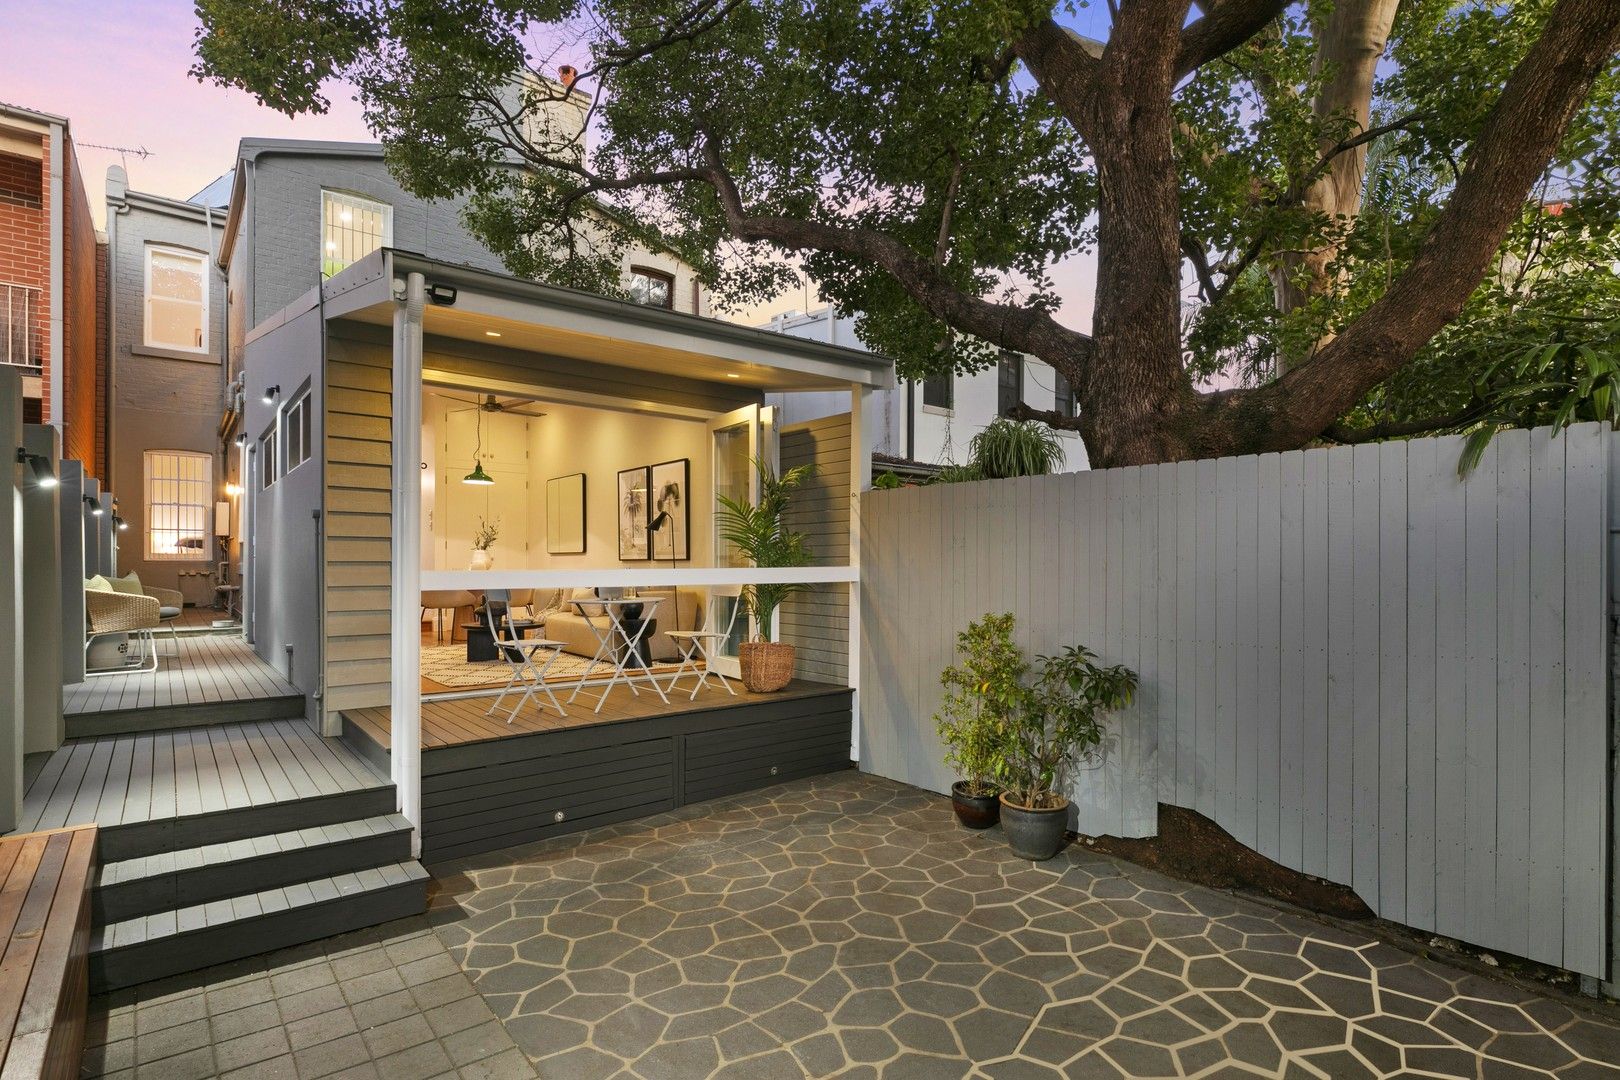 3 bedrooms House in 255 Belmont Street ALEXANDRIA NSW, 2015